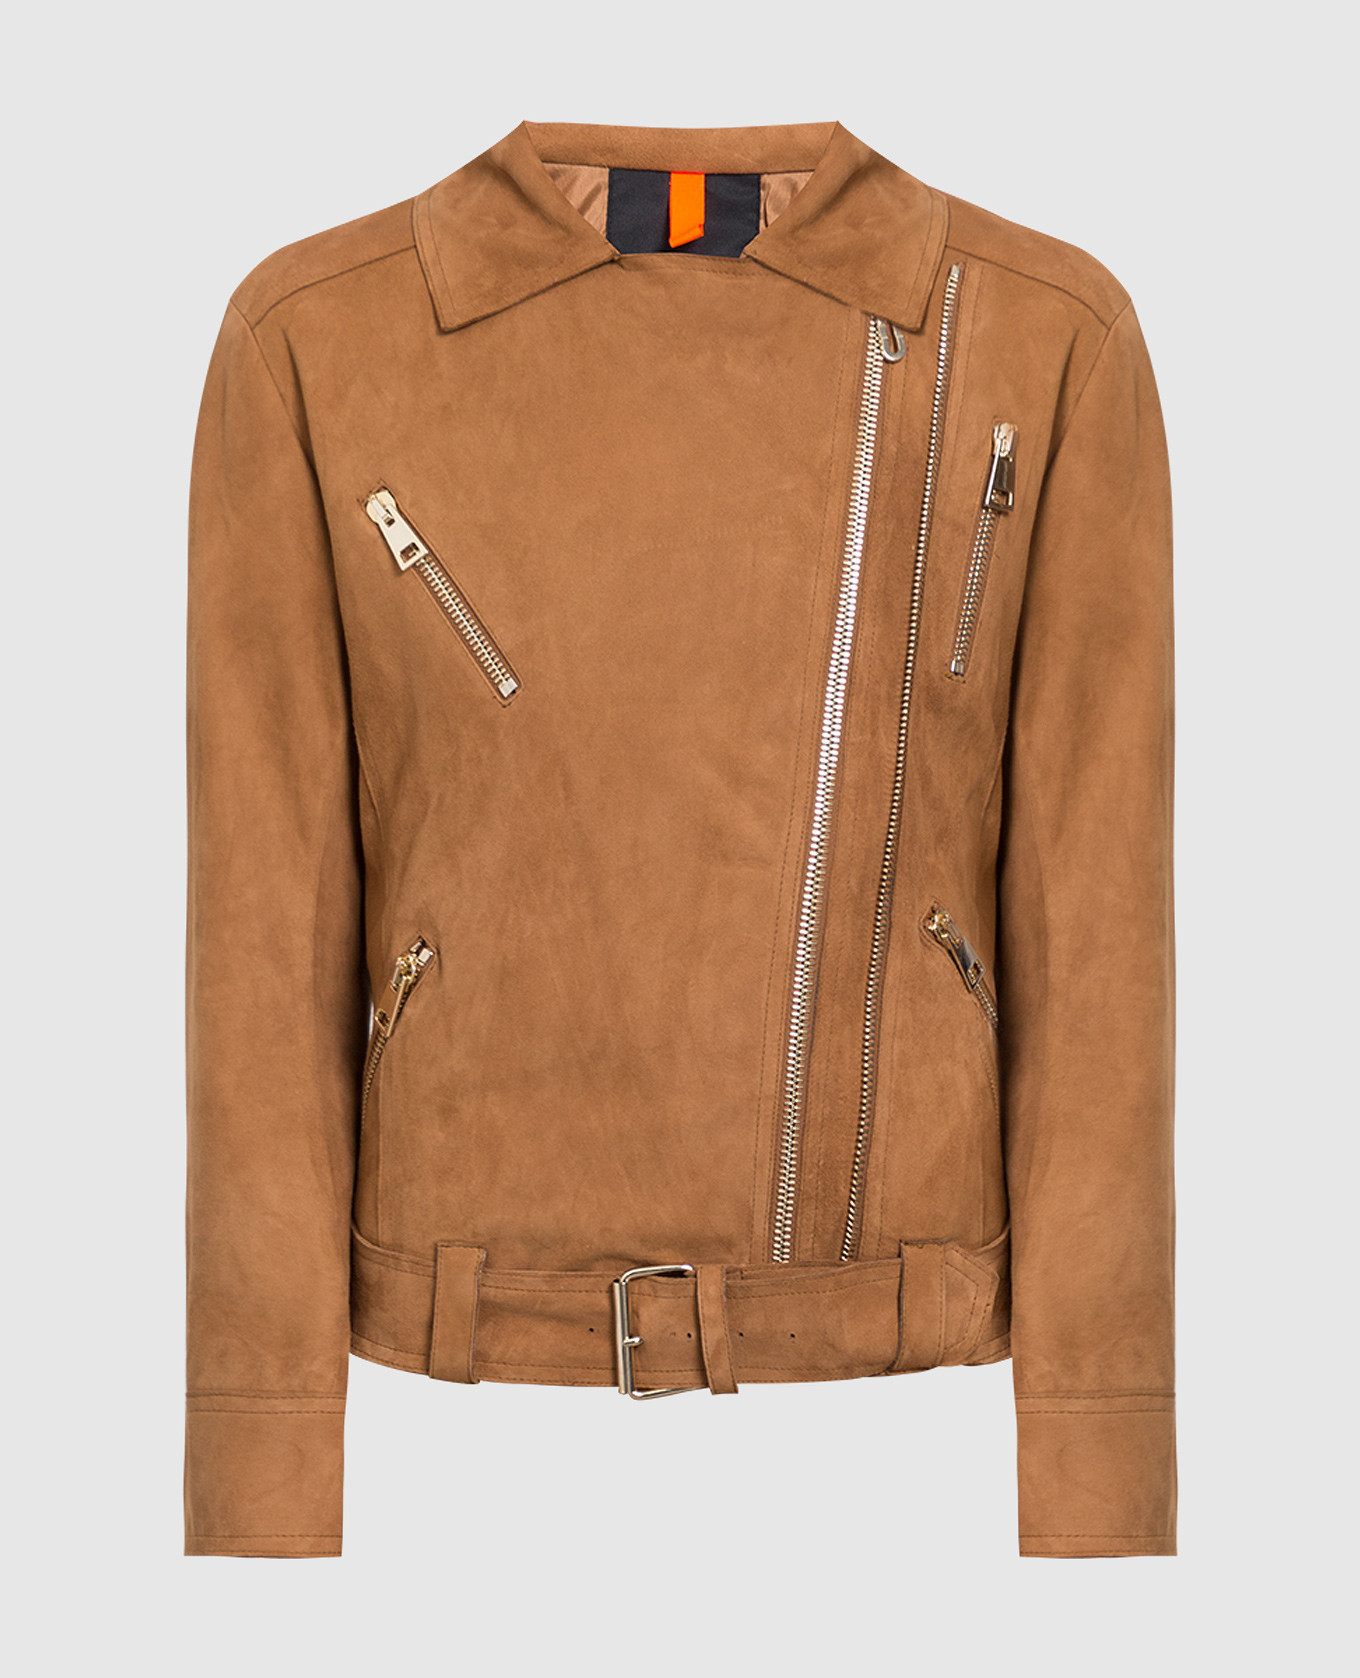 Camoscio brown suede biker jacket